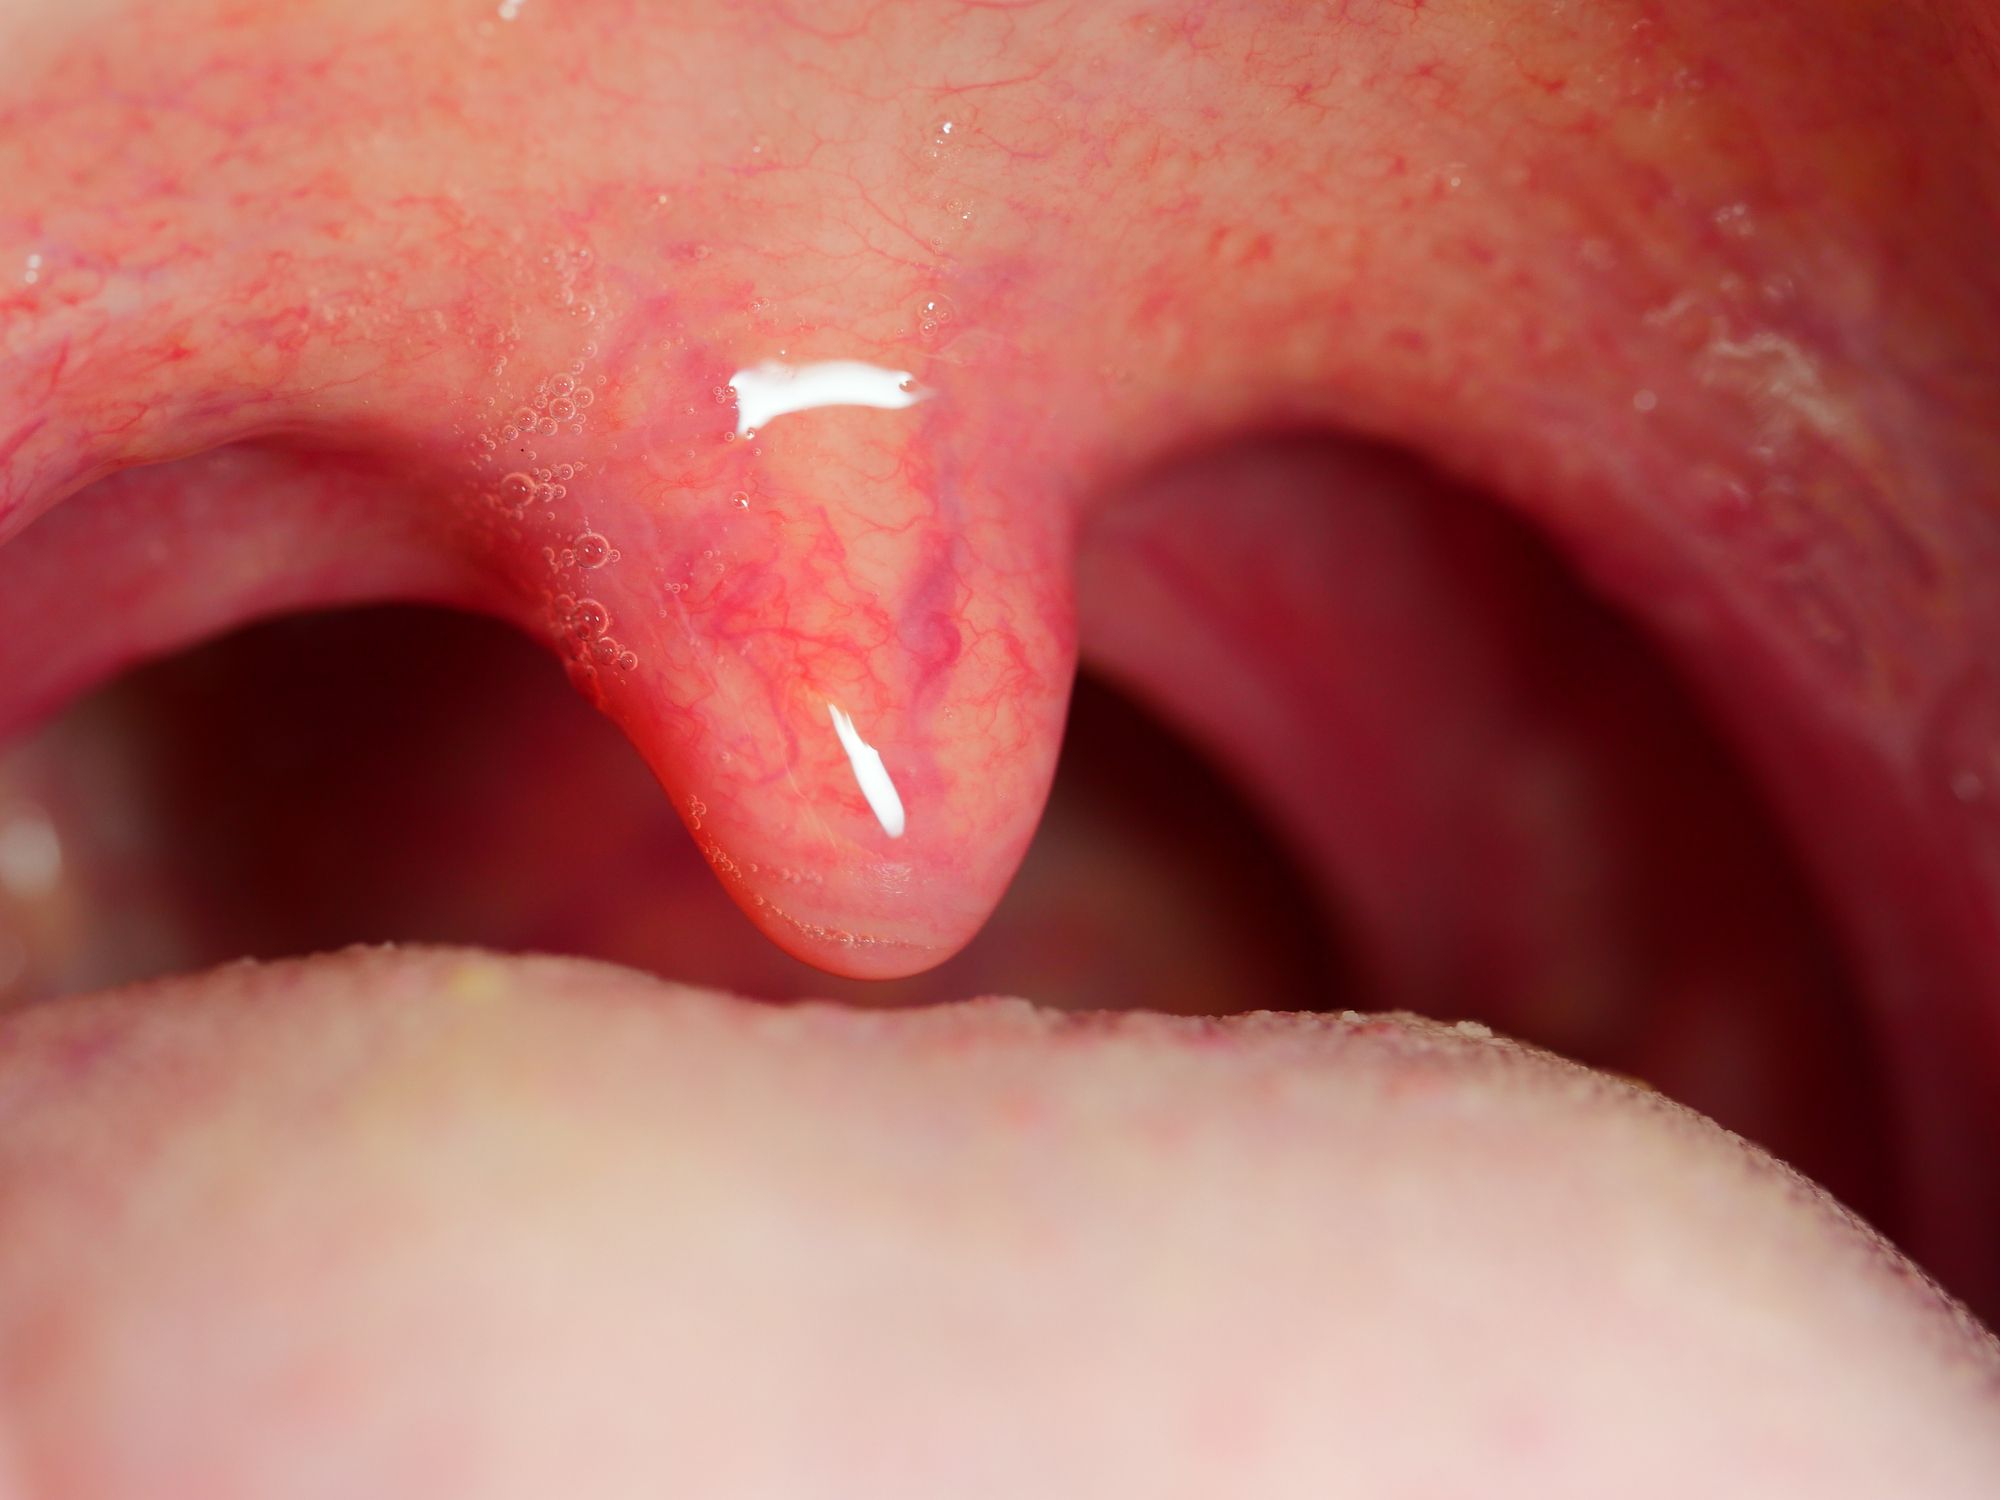 papilloma wart on the uvula)